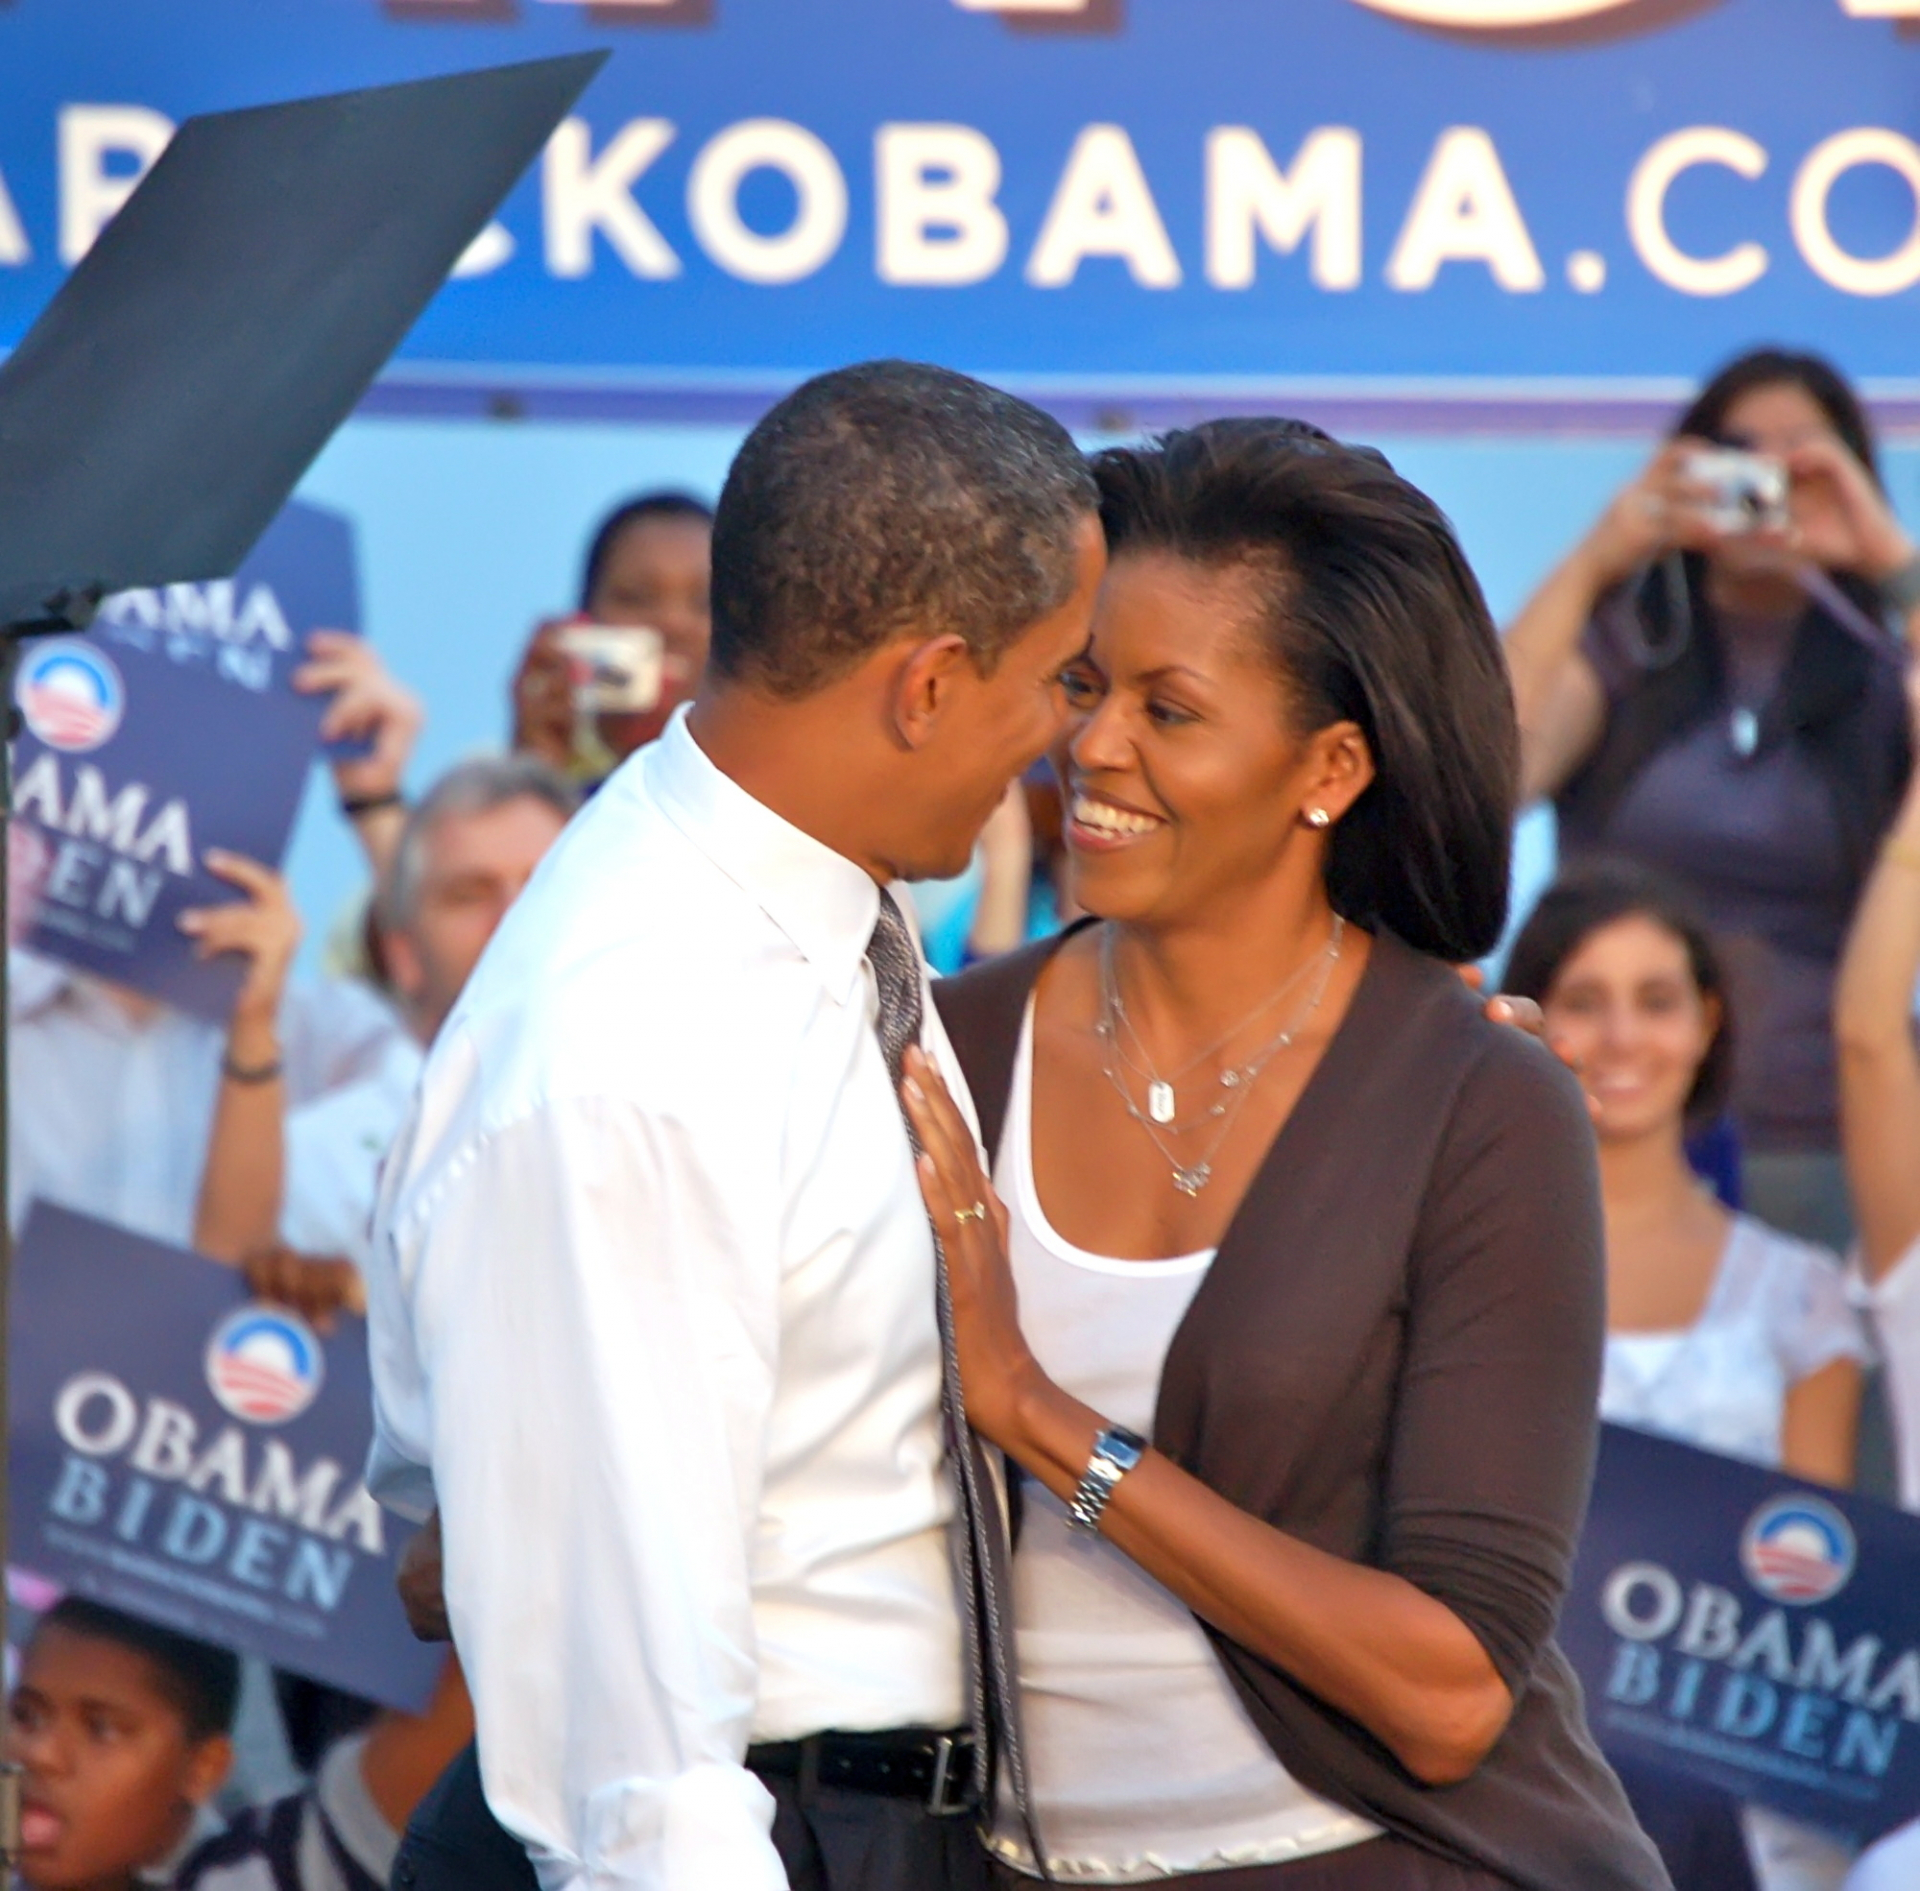 Michelle és Barack Obama: Ez idegesíti őket a legjobban egymásban